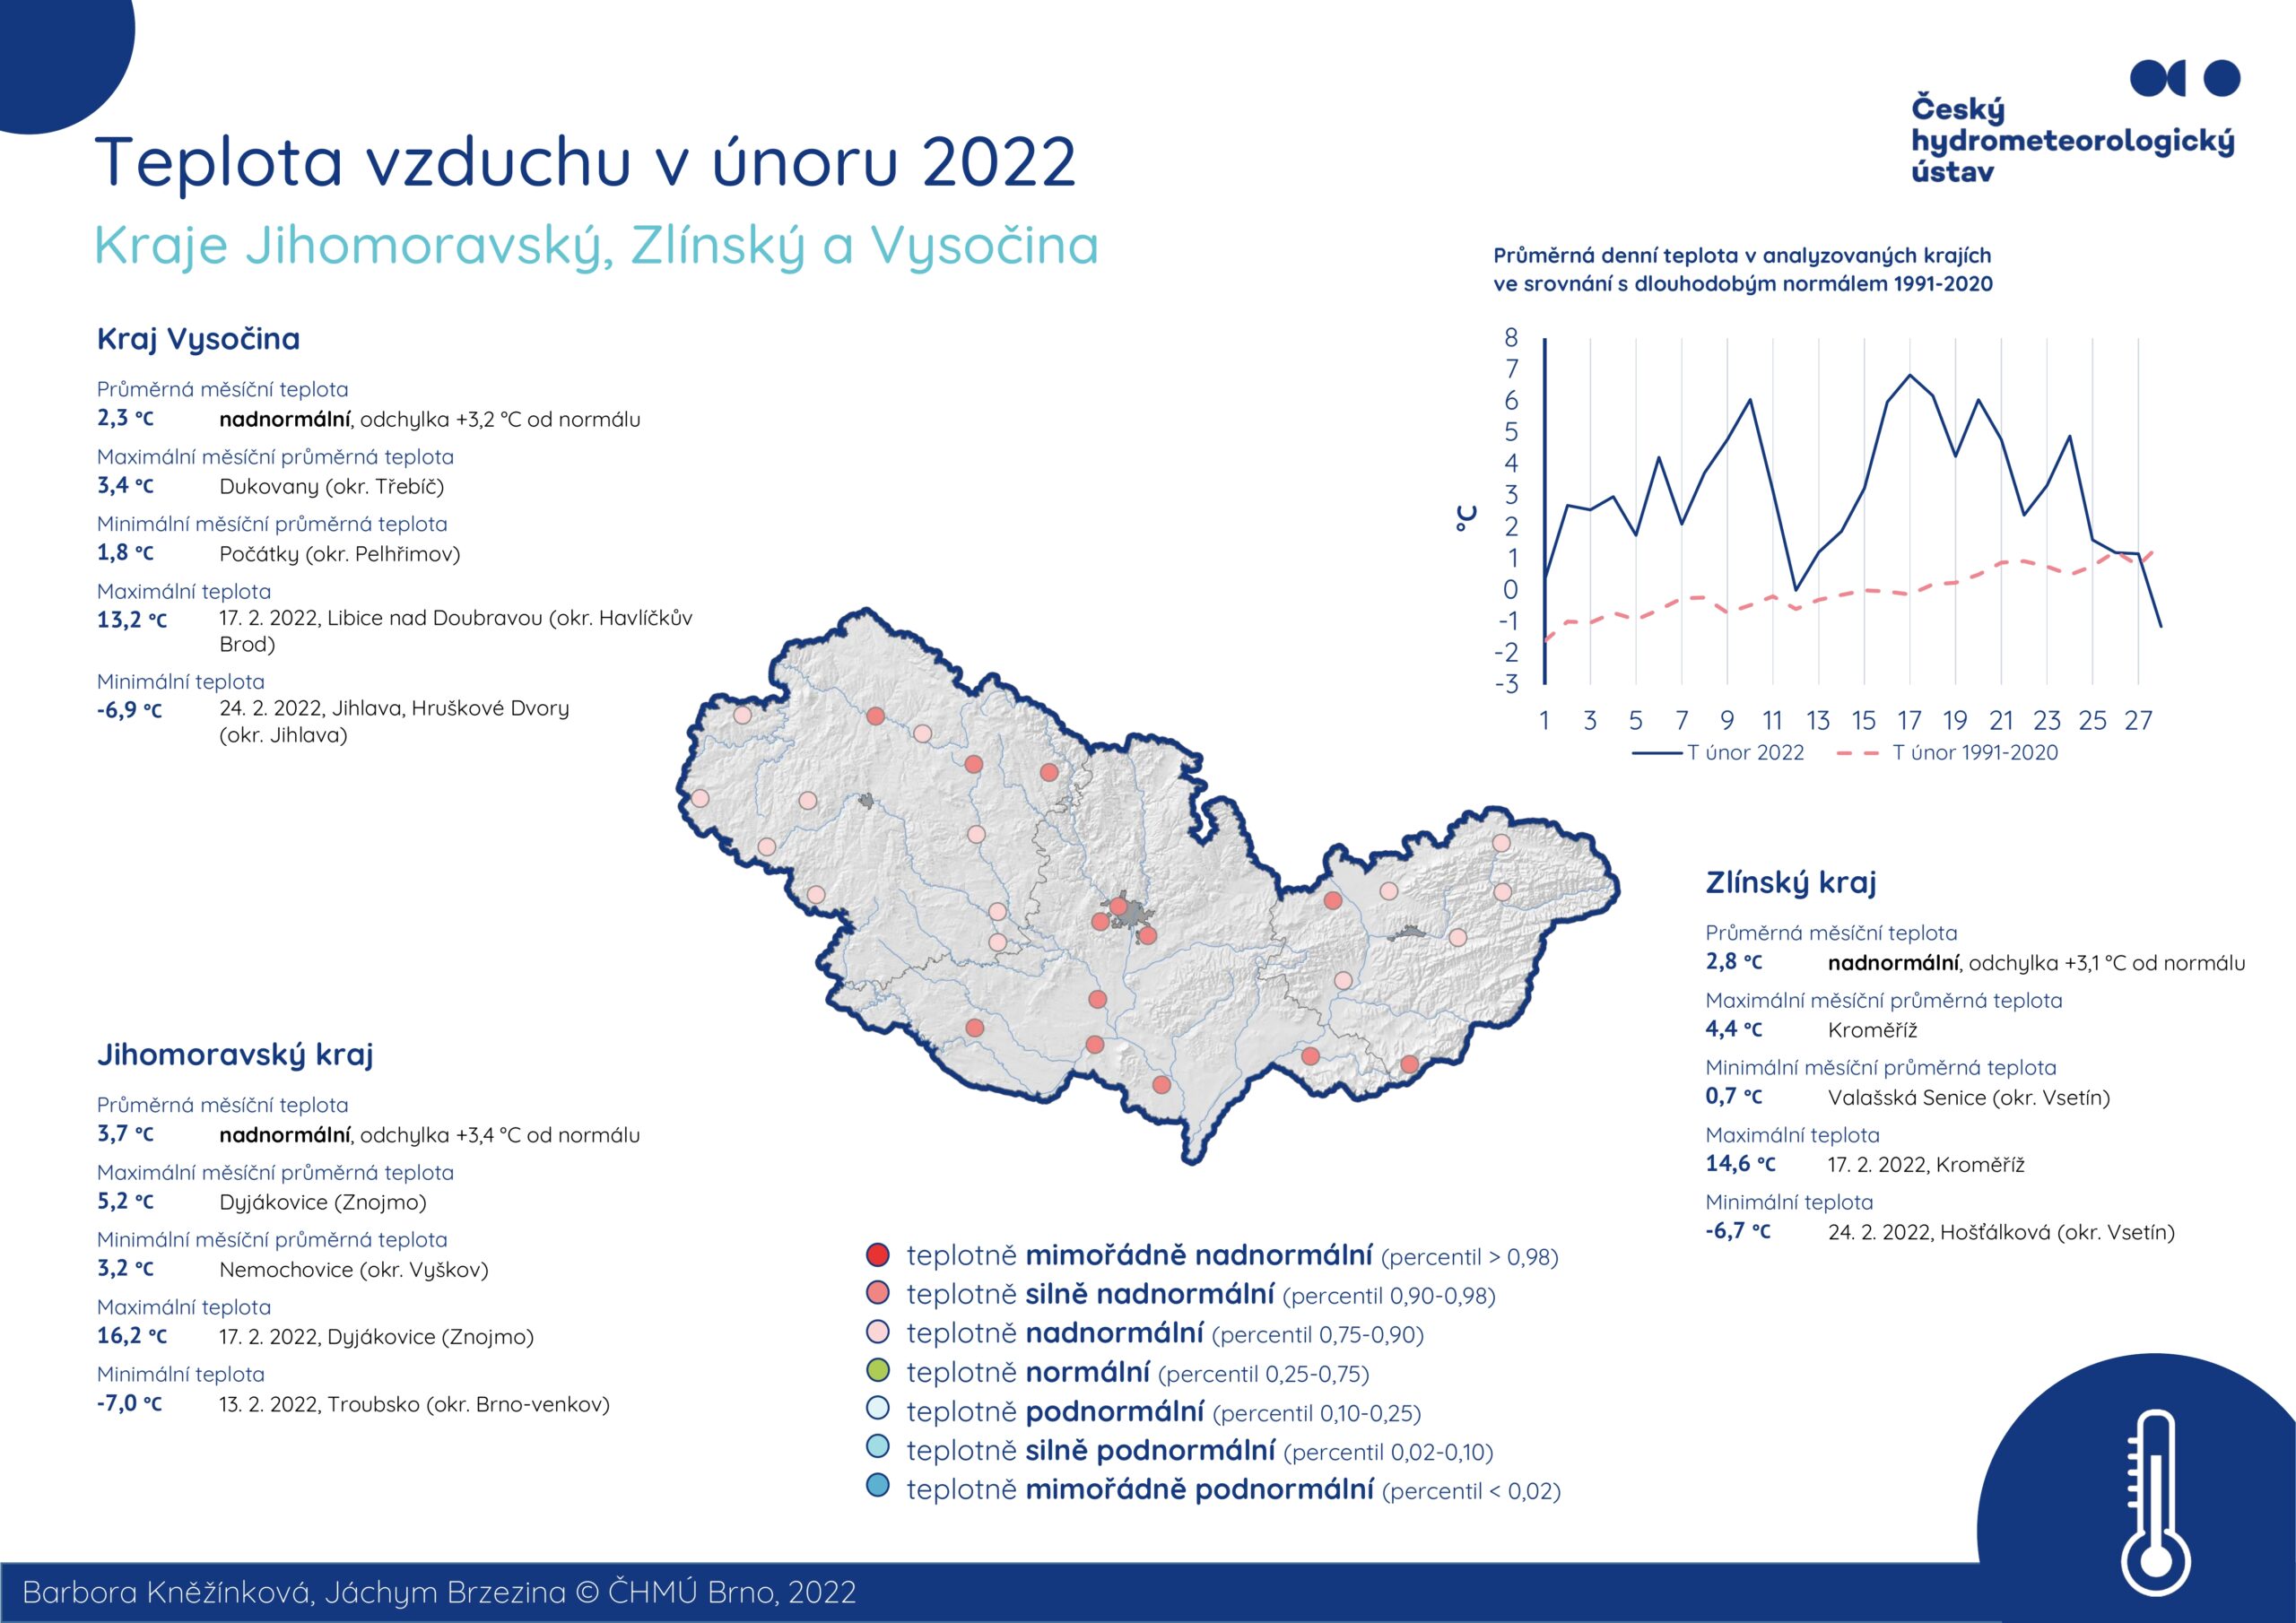 Teplota vzduchu v únoru 2022 – Jihomoravský kraj, Zlínský kraj a Kraj Vysočina1 min čtení